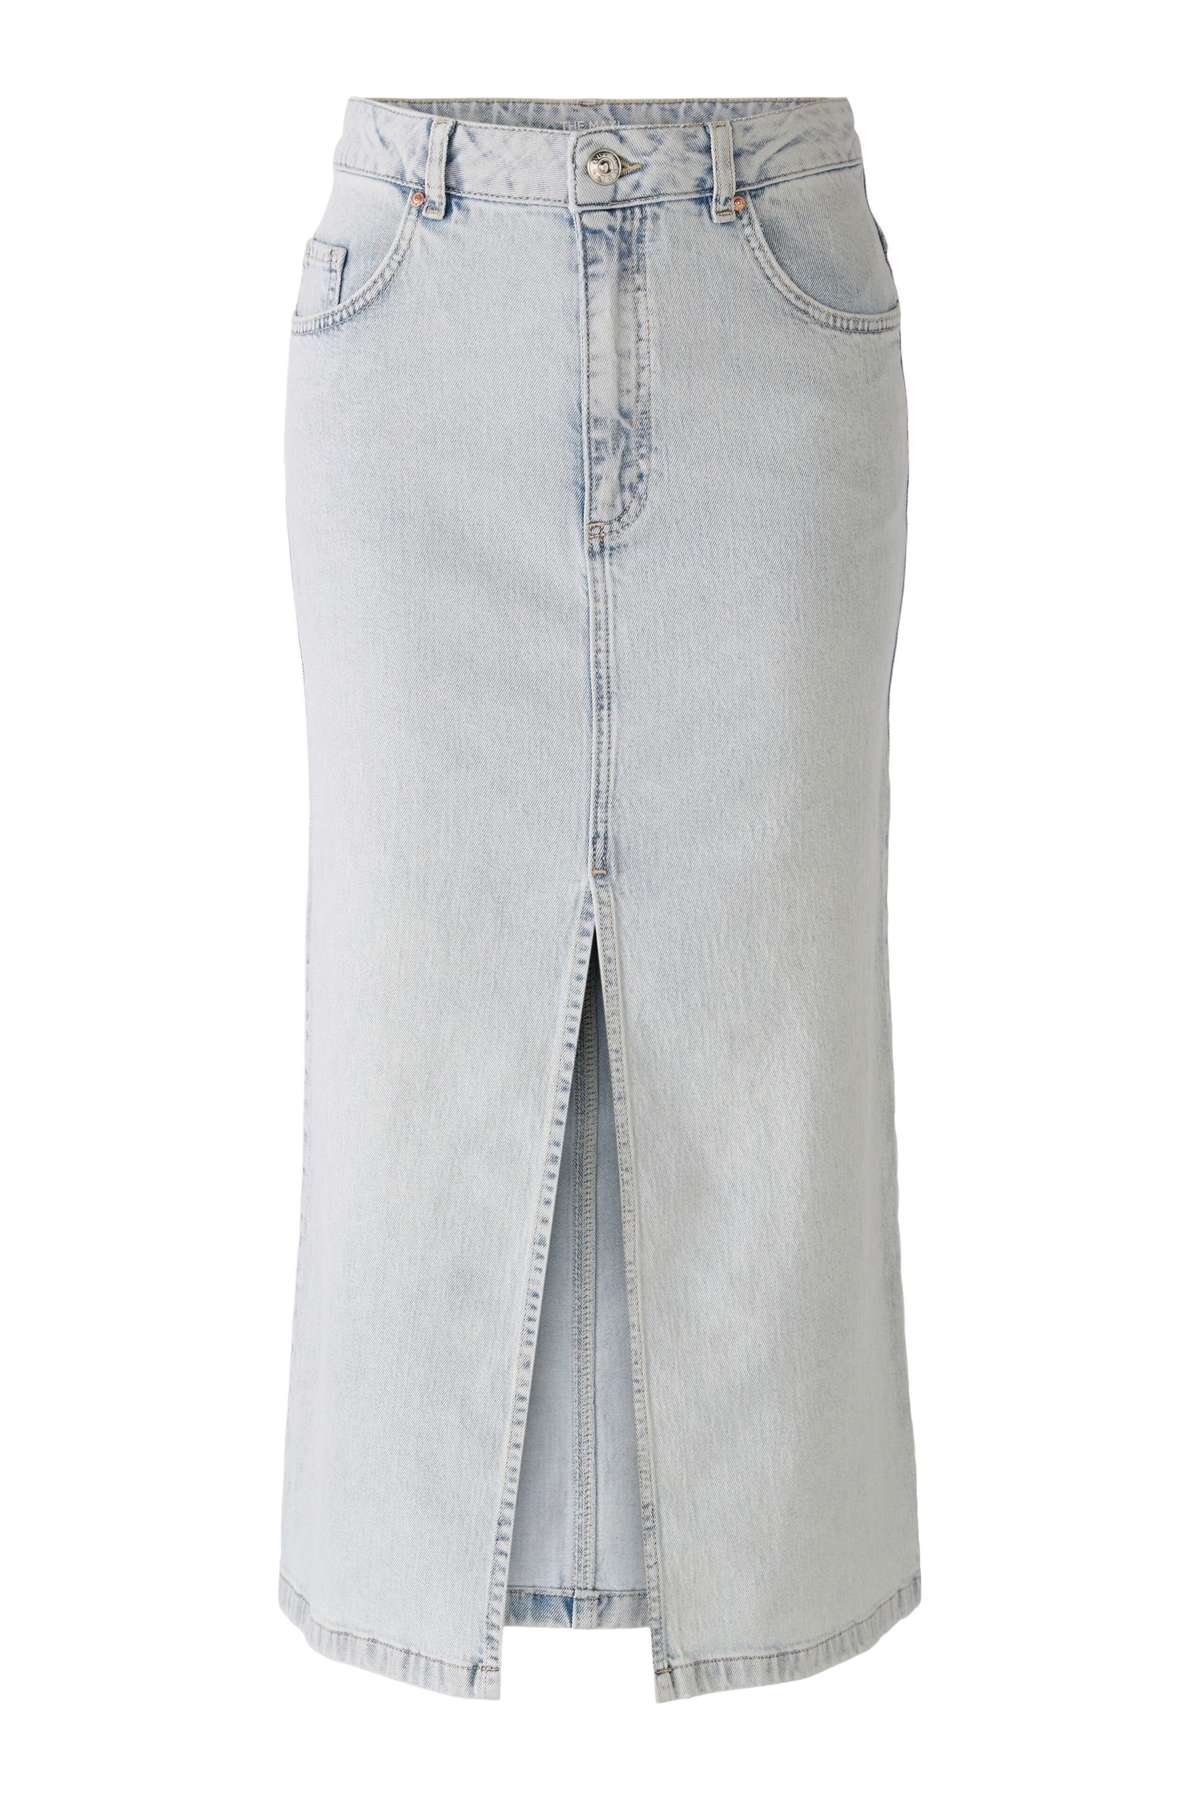 Джинсовая юбка джинсовая юбка синяя джинсовая (1 шт.)